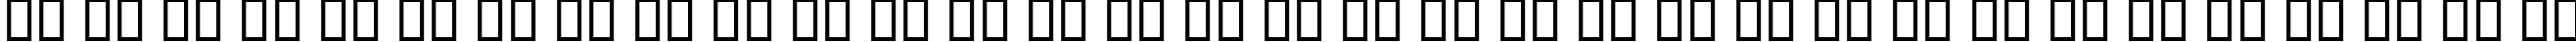 Пример написания русского алфавита шрифтом B Baran Outline